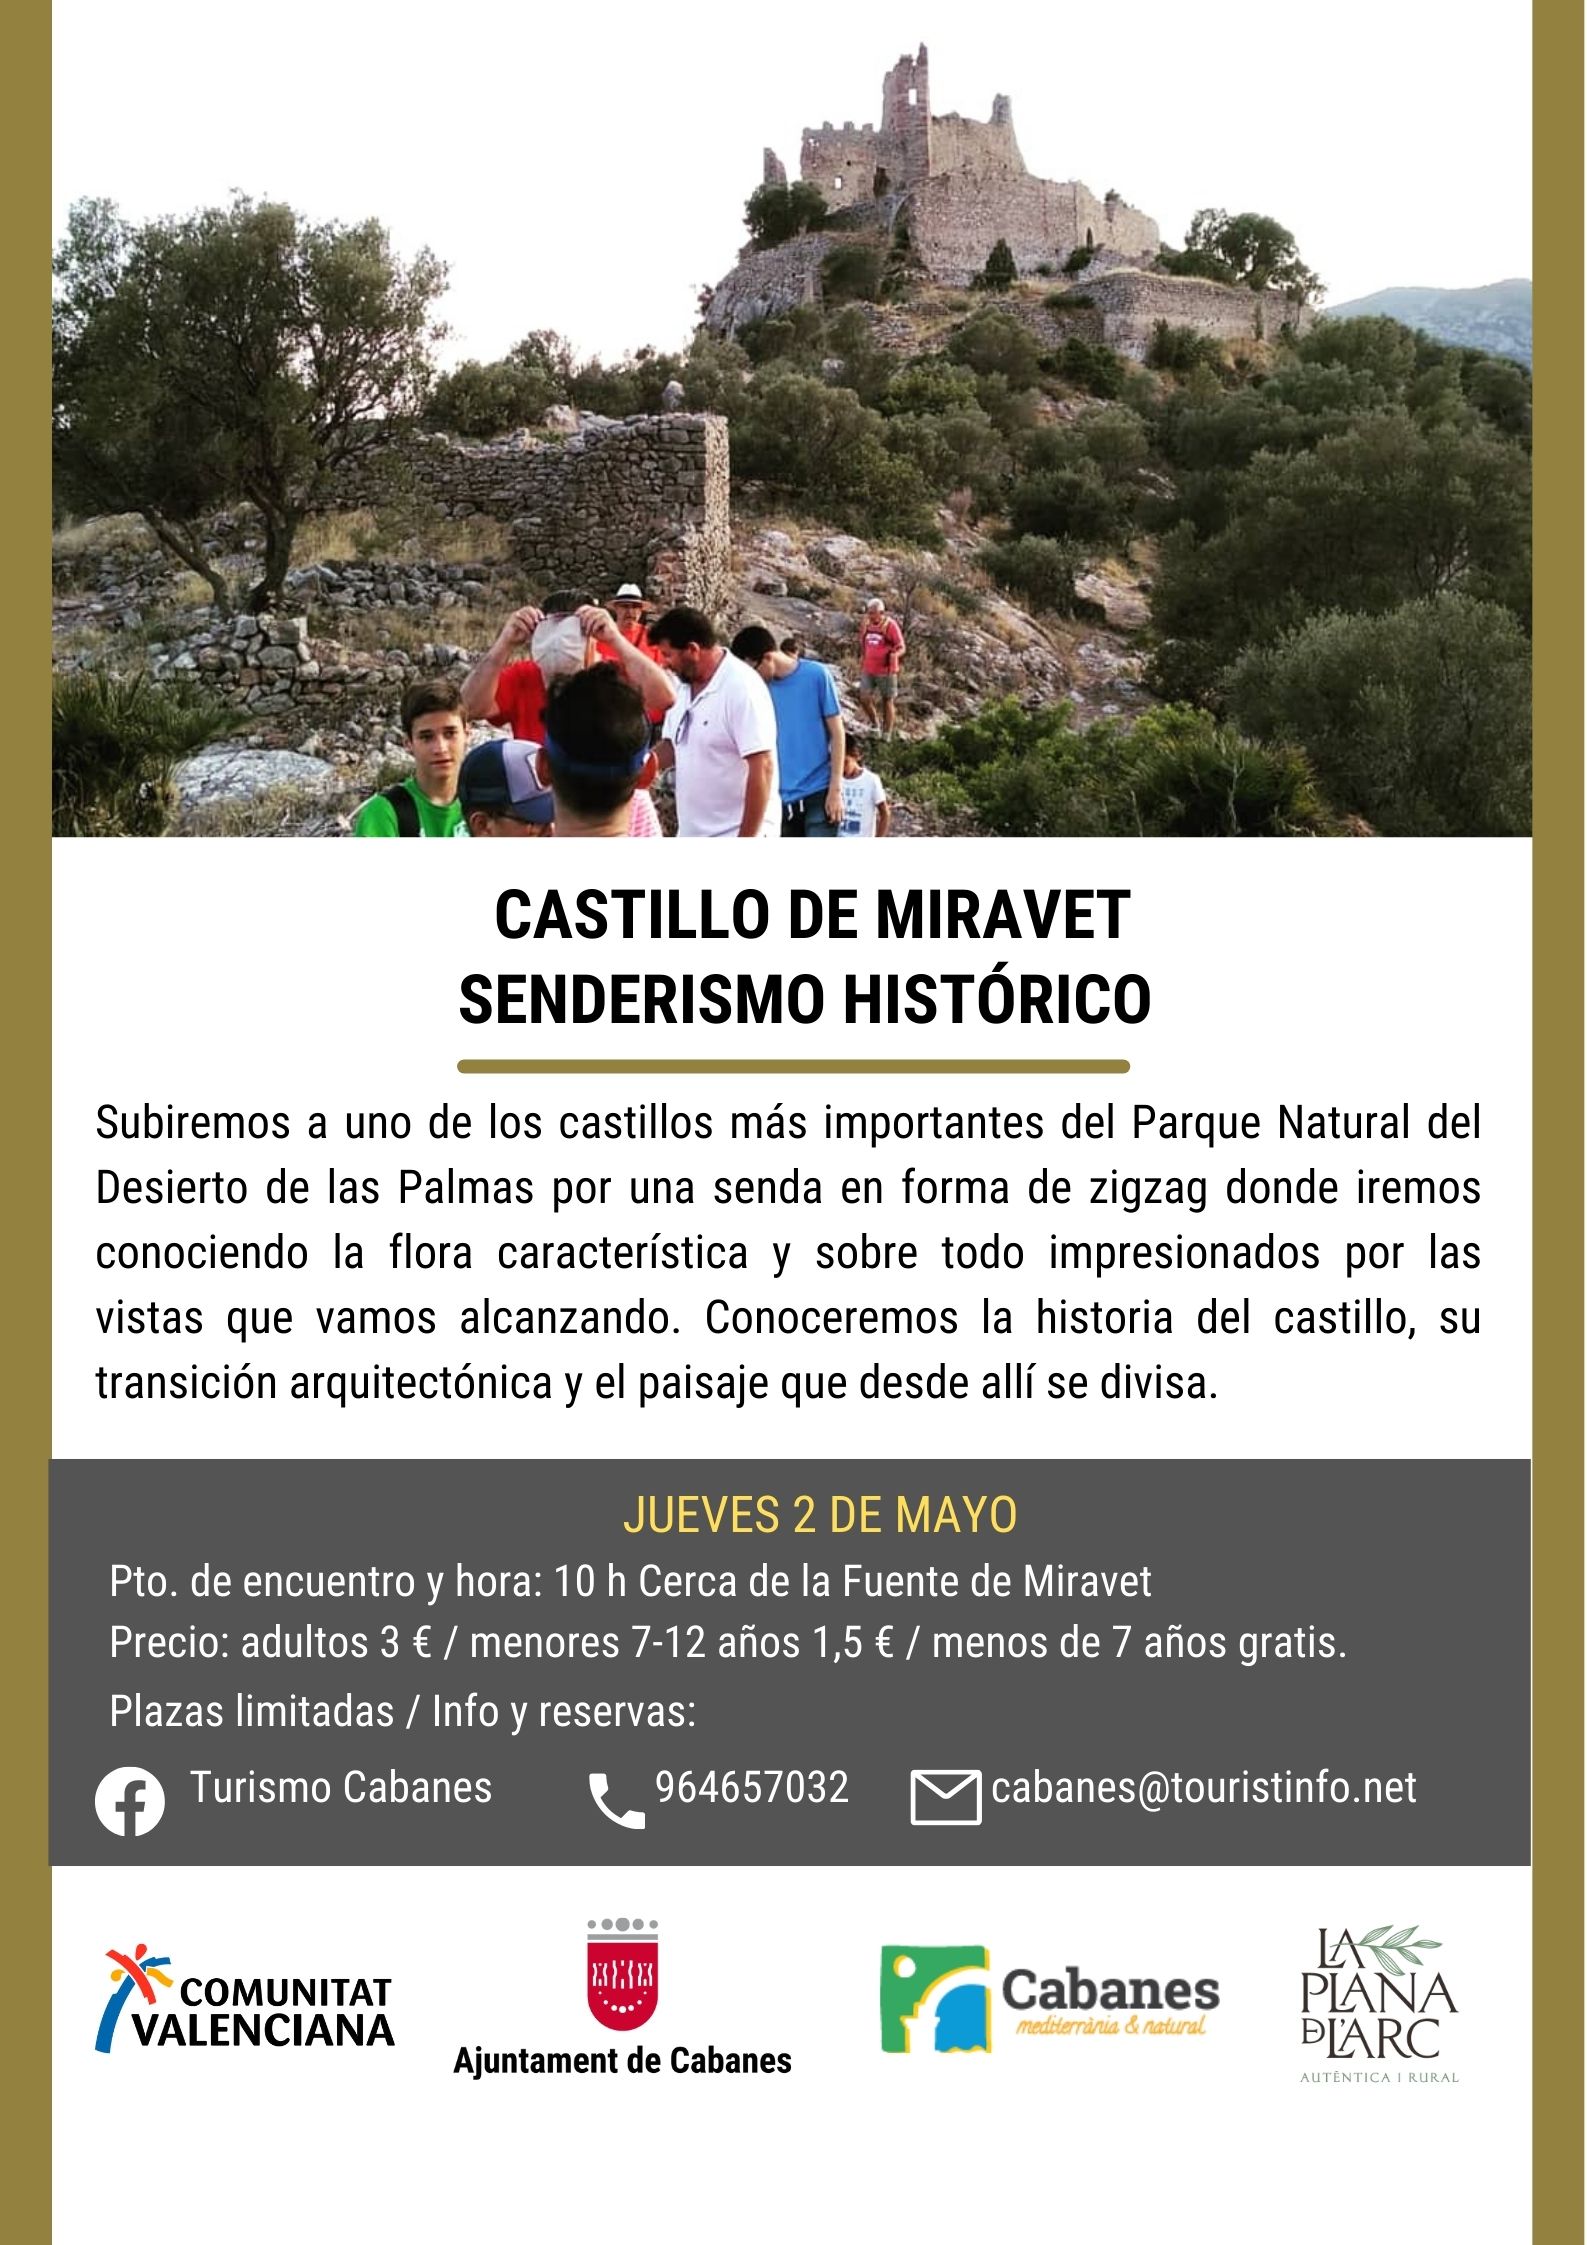 Senderismo: Castillo de Miravet